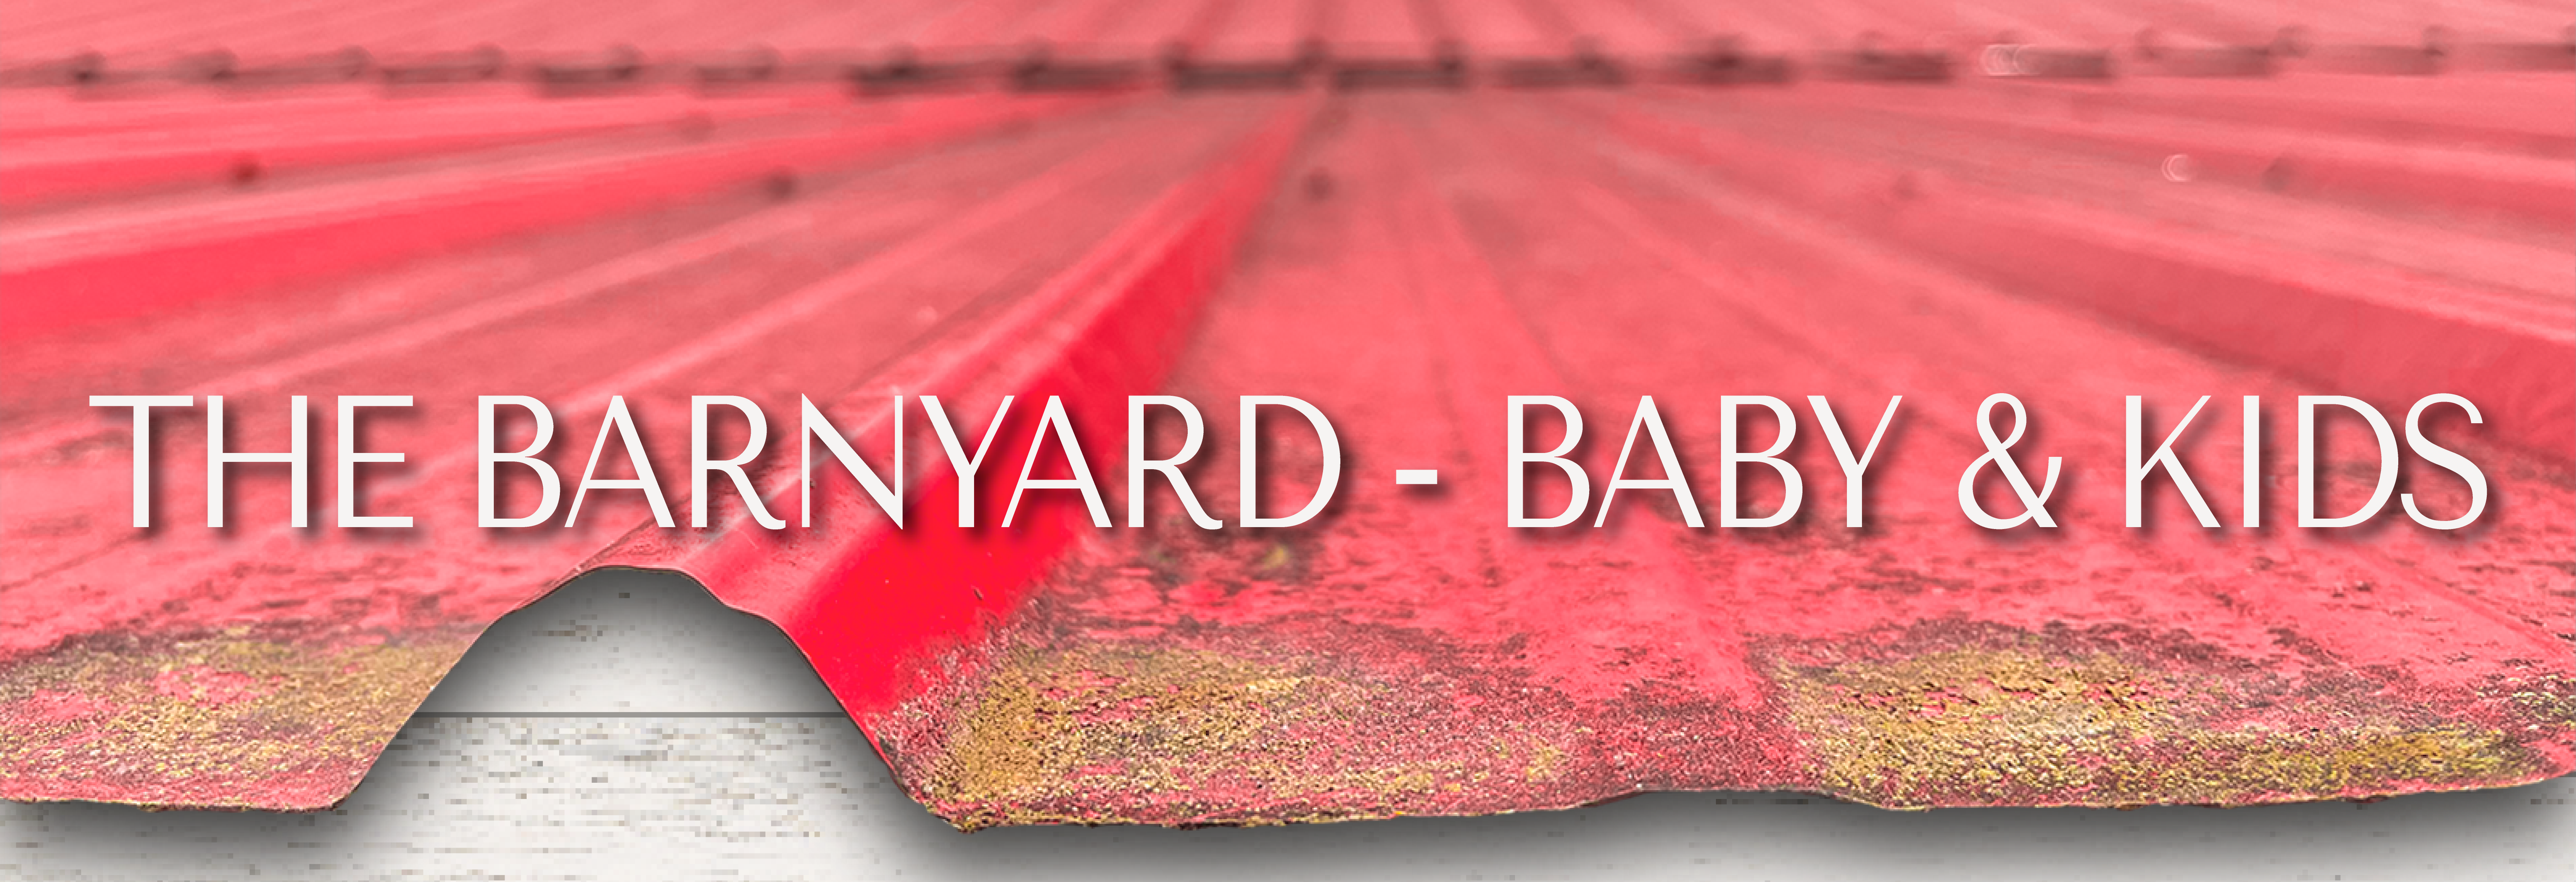 •The Barnyard - Baby & Kids•